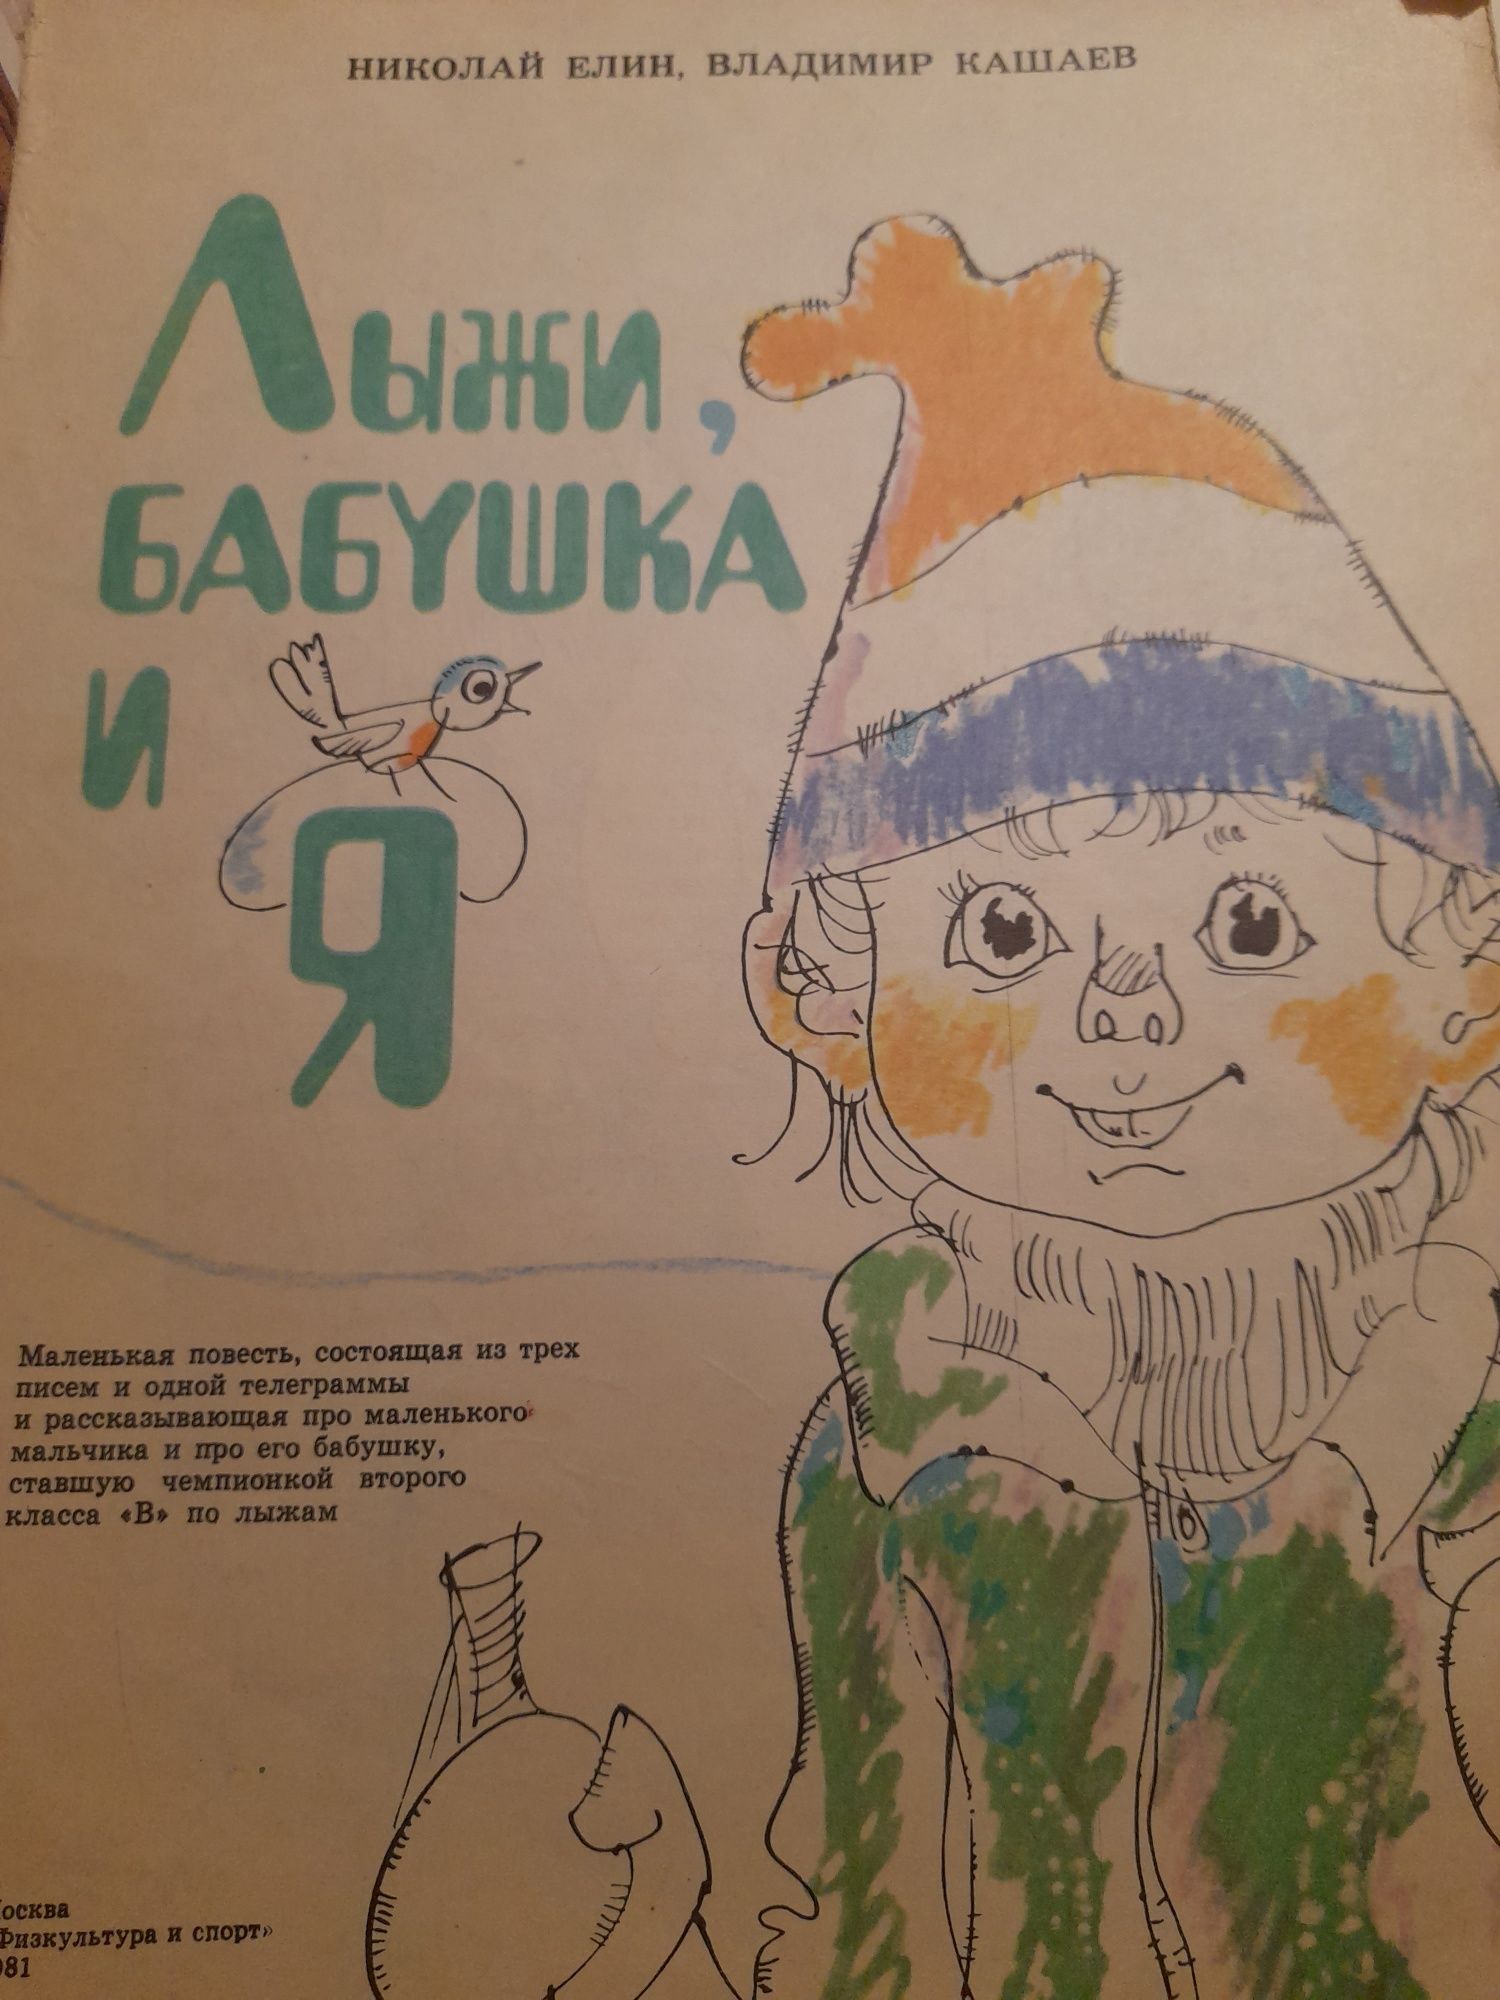 Николай Елин,Владимир Кашаев "Лыжи,бабушка и Я" 1981 год